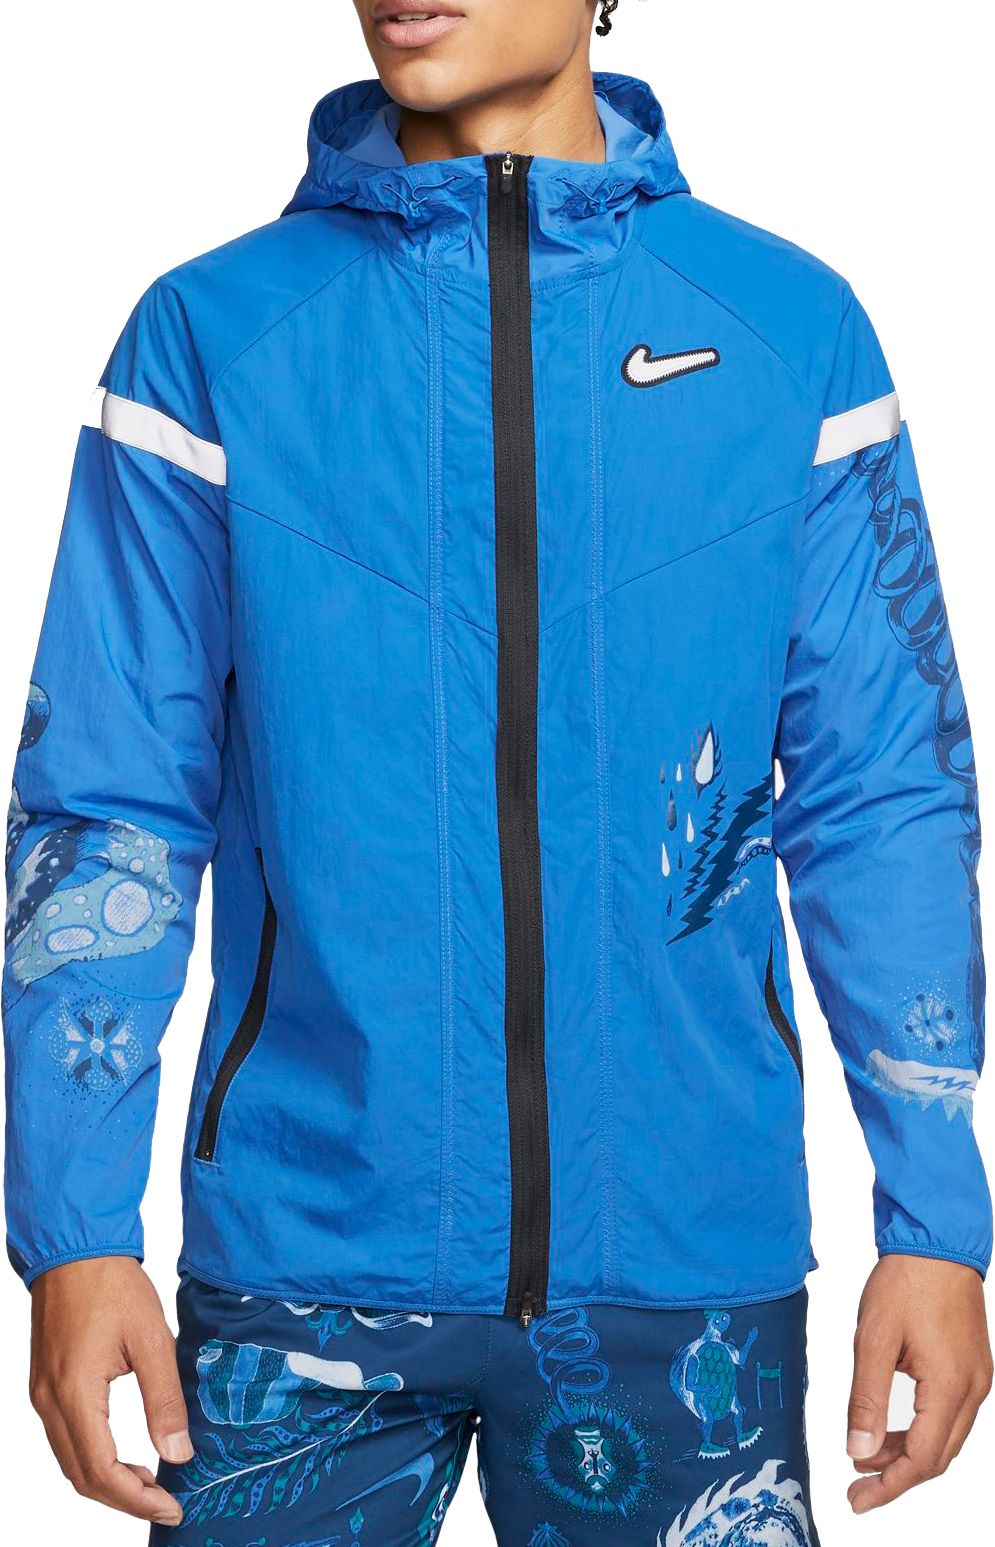 Nike Men's Windrunner Running Jacket - .97